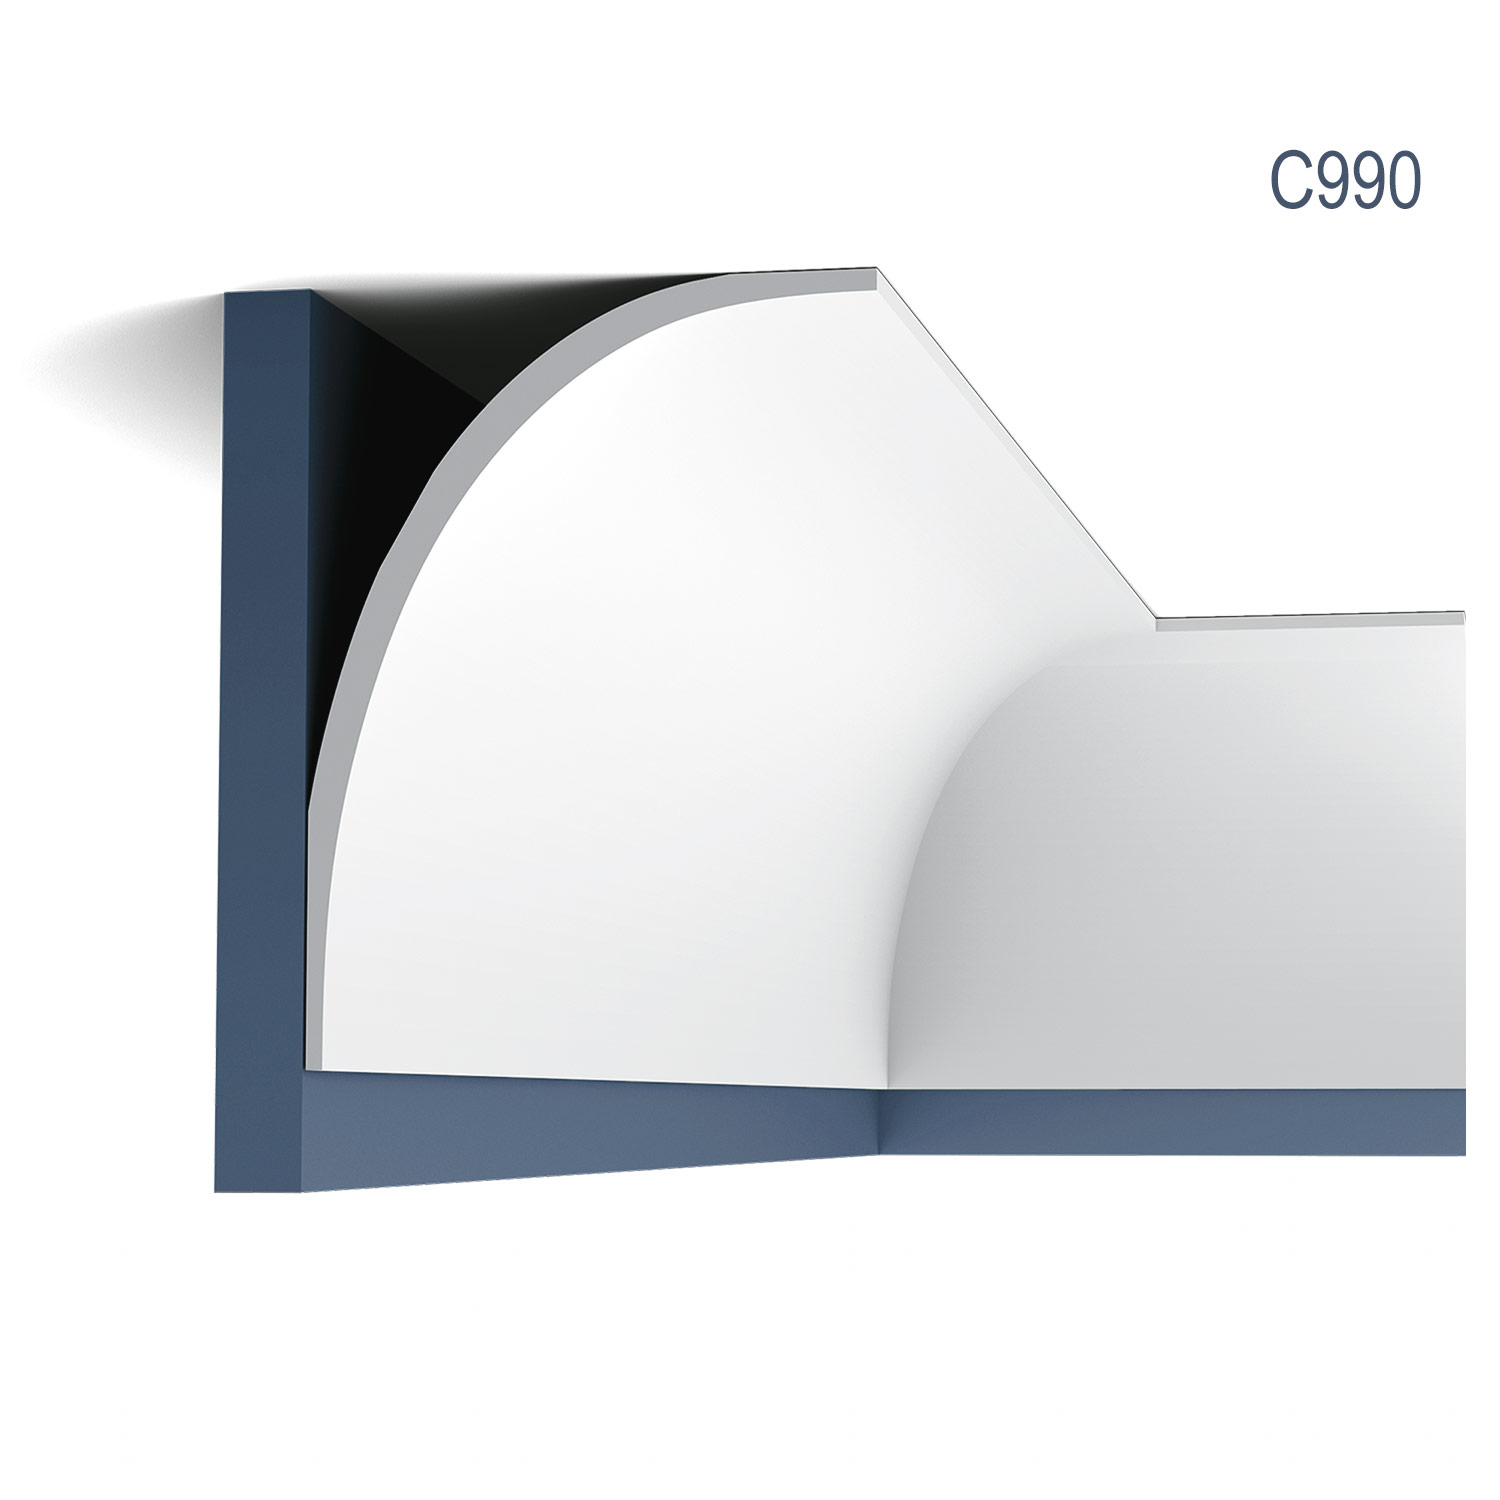 Cornisa C990, profil decorativ, pentru tavan, alba, vopsibila, rigida, calitate excelenta, Belgia, din Poliuretan rigid, L 200 x H 15,9 x L 21,6 cm